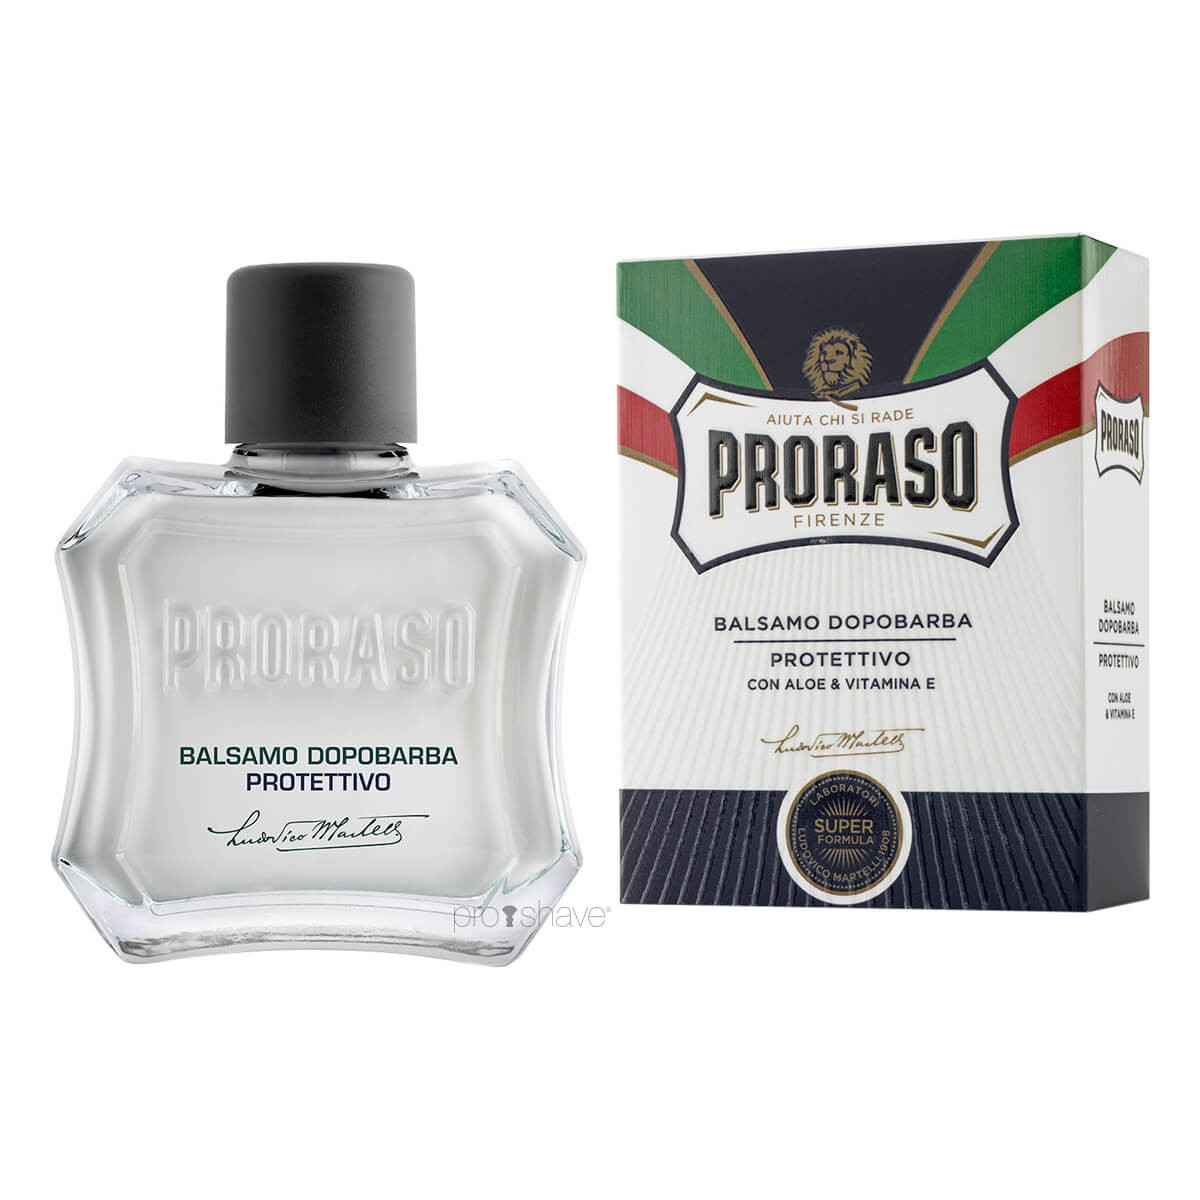 Proraso Aftershave Balm - Protect, Aloe & E-vitamin, 100 ml.